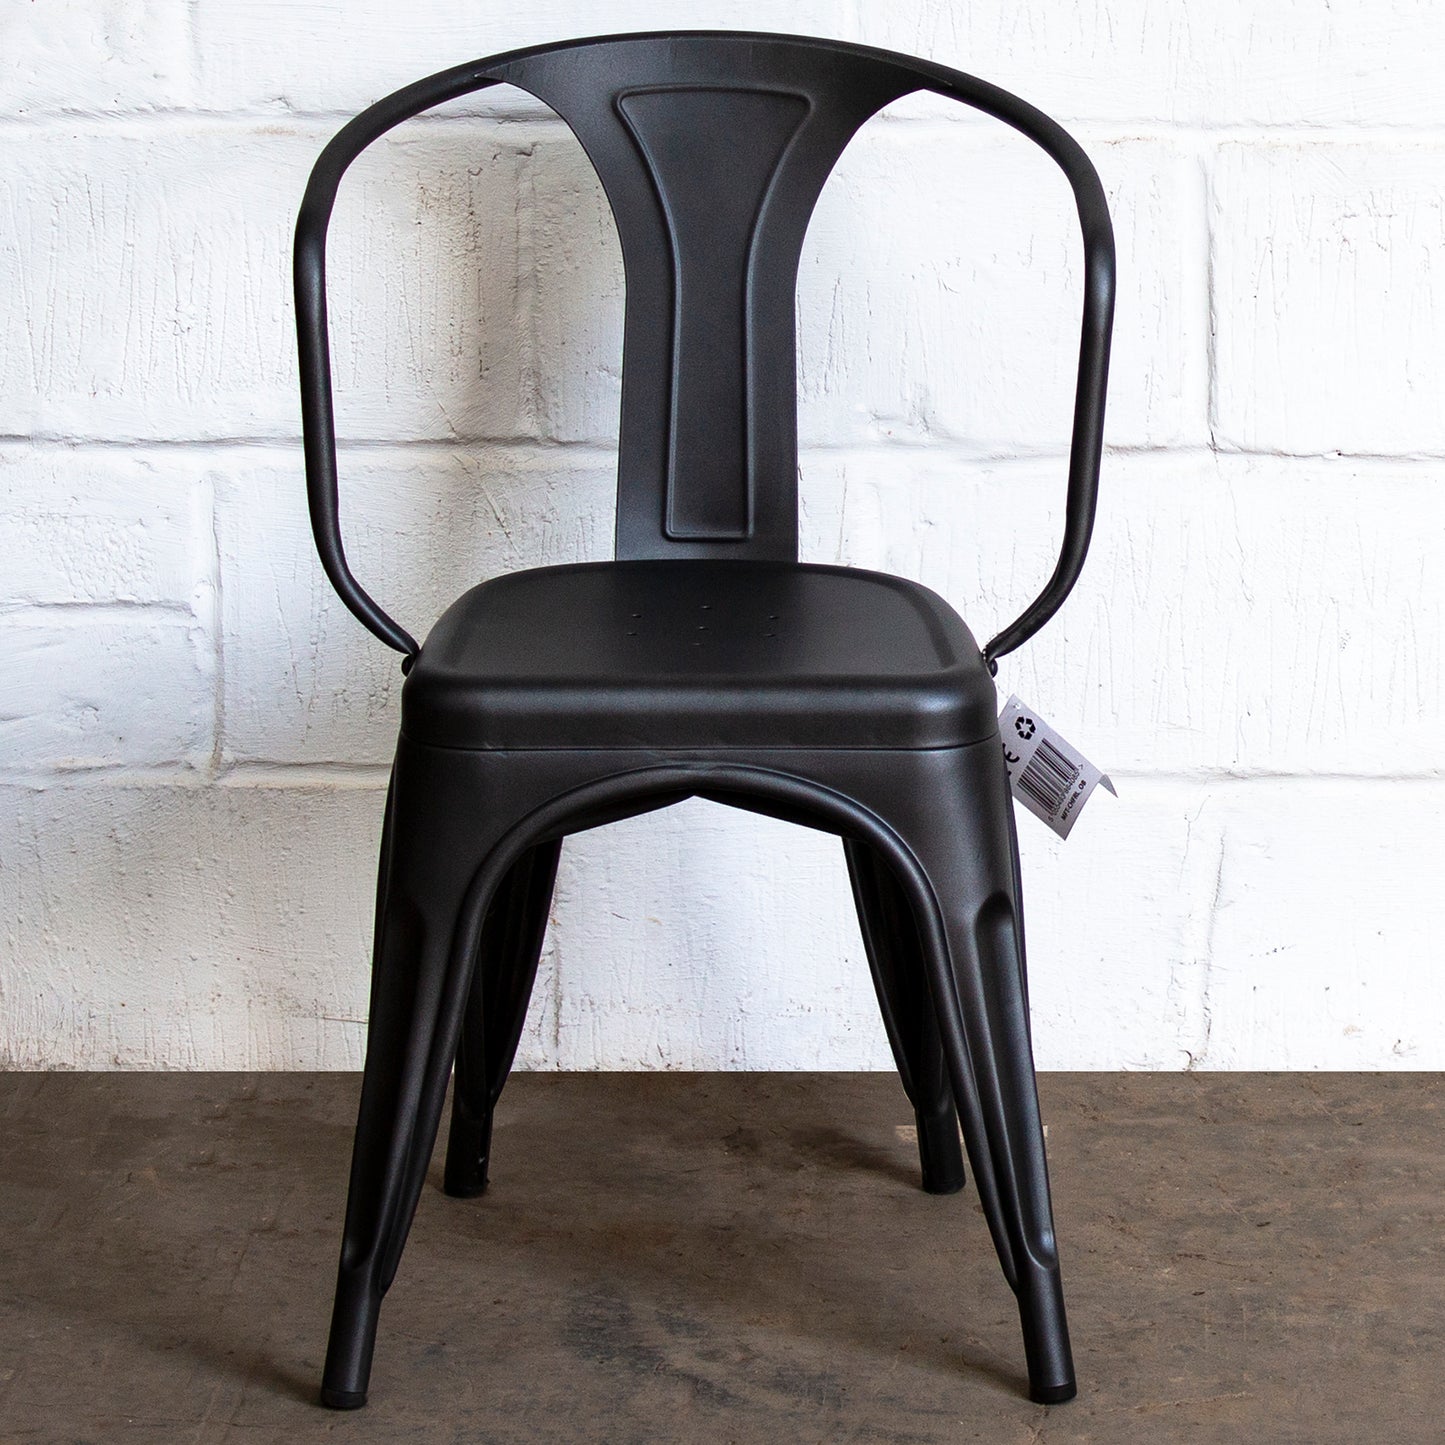 3PC Belvedere Table & Forli Chair Set - Onyx Matt Black